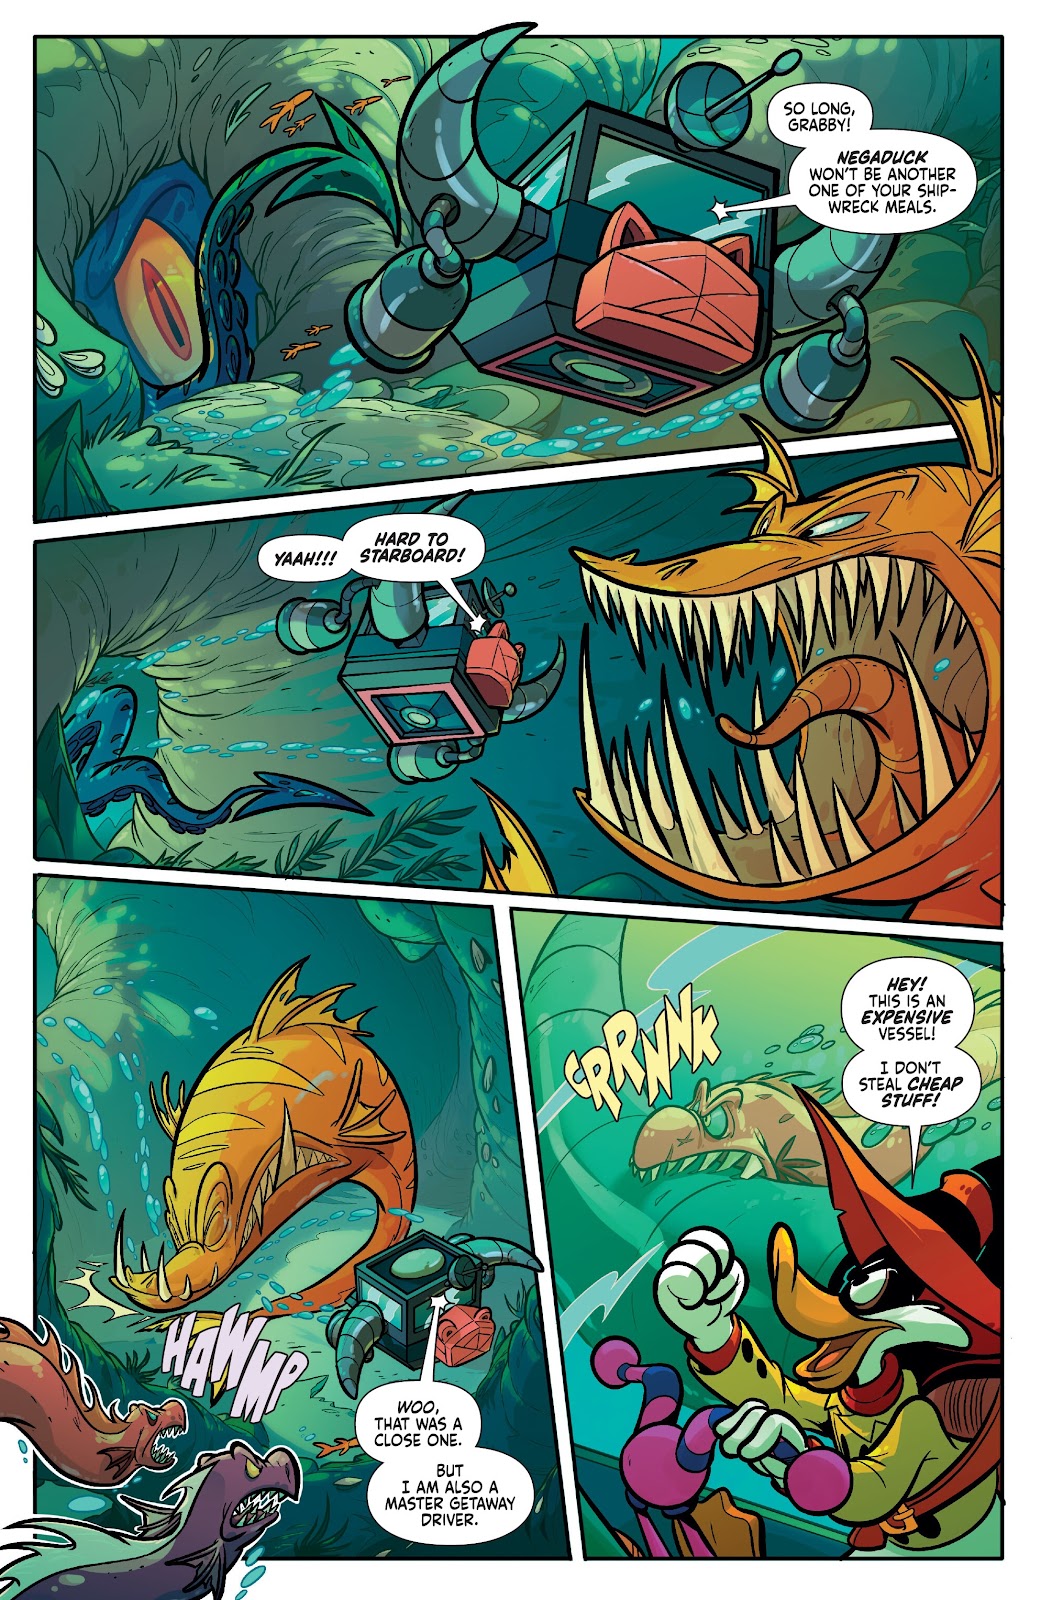 Darkwing Duck: Negaduck issue 3 - Page 10